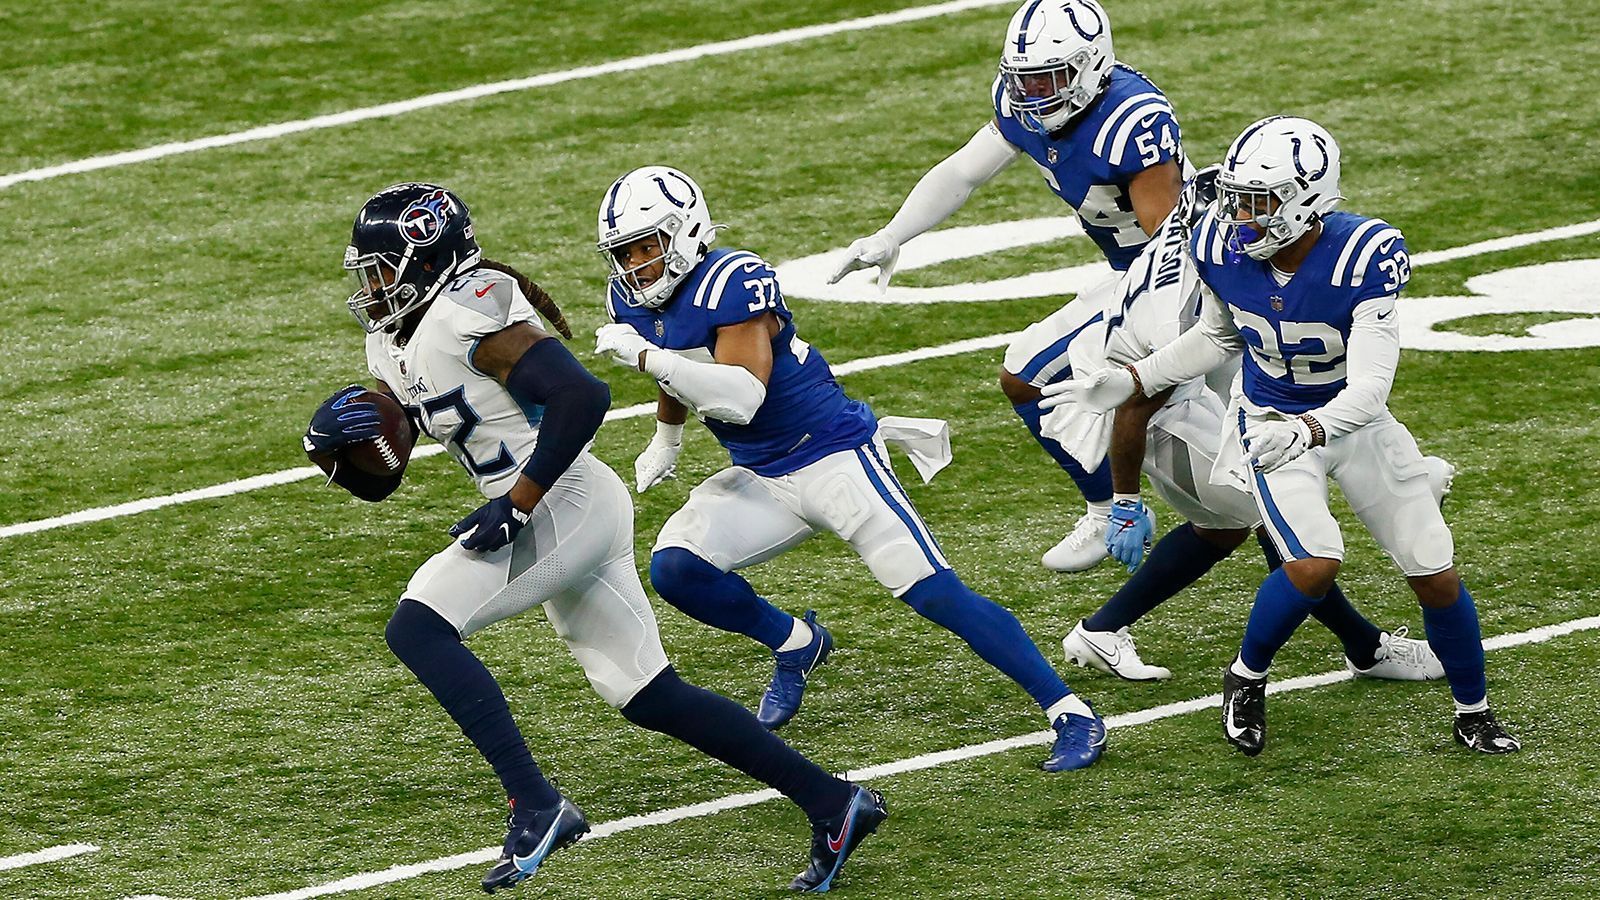 
                <strong>Platz 8: Indianapolis Colts (11-5)</strong><br>
                Kurz mussten die Indianapolis Colts gegen die Jacksonville Jaguars zittern, am Ende stand jedoch ein überzeugender 28:14-Sieg gegen die Jags zu Buche. Beeindruckend dabei waren die insgesamt 273 Rushing Yards, die die Colts als Team akkumulierten, sowie die 253 Rushing Yards alleine von Running Back Jonathan Taylor, was einen Franchise-Rekord aufstellte. Um in den Playoffs nachhaltig Erfolg zu haben, muss ein Team den Ball und die Uhr kontrollieren können. Wenn die Colts das schaffen wie in Woche 17, dann kann auch Philip Rivers auf seine womöglich letzten Tage in der NFL noch via Play-Action-Pässen glänzen. Mit den Buffalo Bills (LIVE am Samstag ab 19:05 Uhr auf ProSieben und ran.de) wartet jedoch ein dicker Brocken auf die Colts.
              